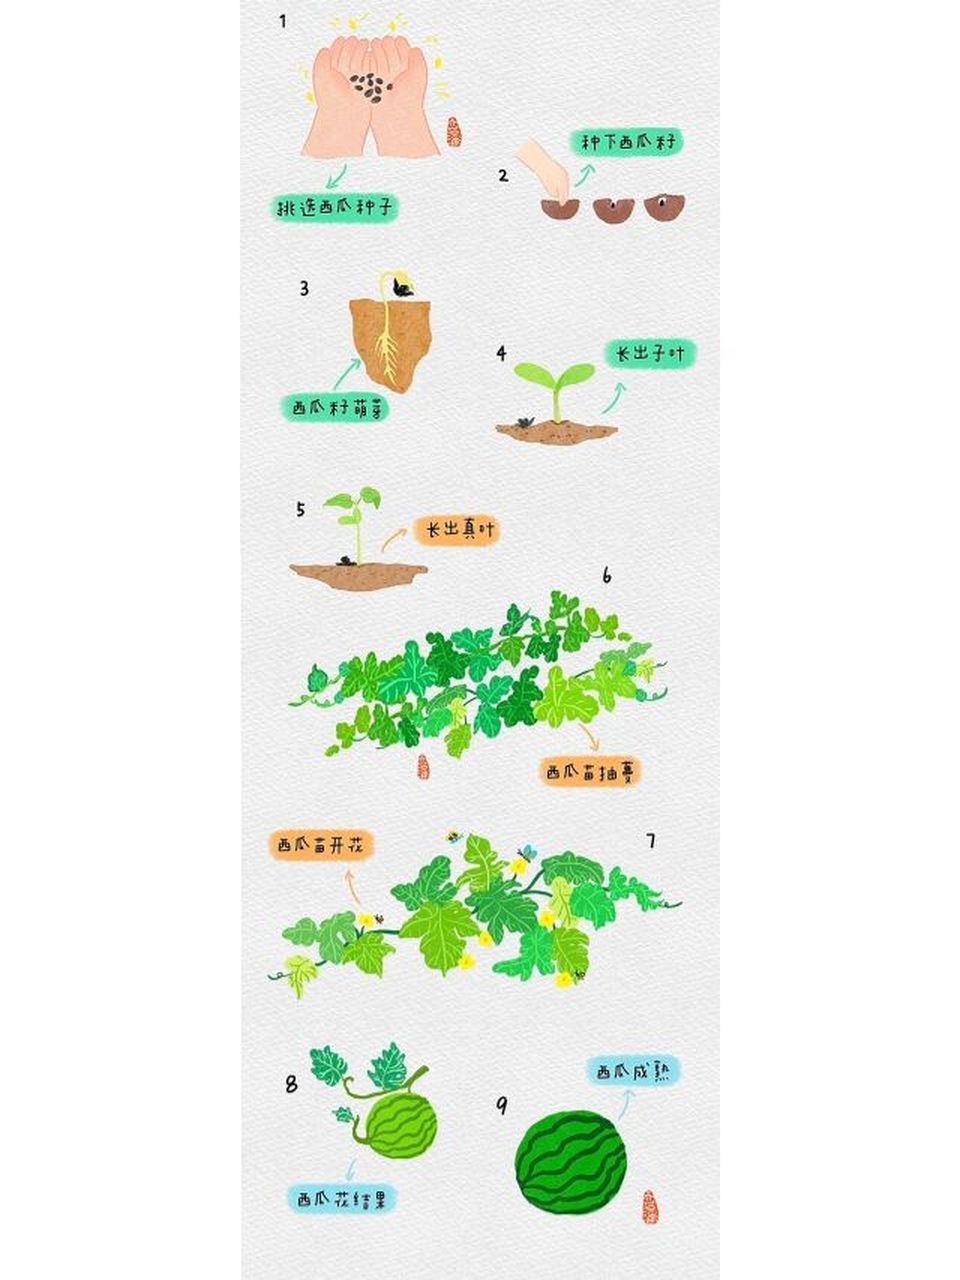 西瓜的生长过程图解图片